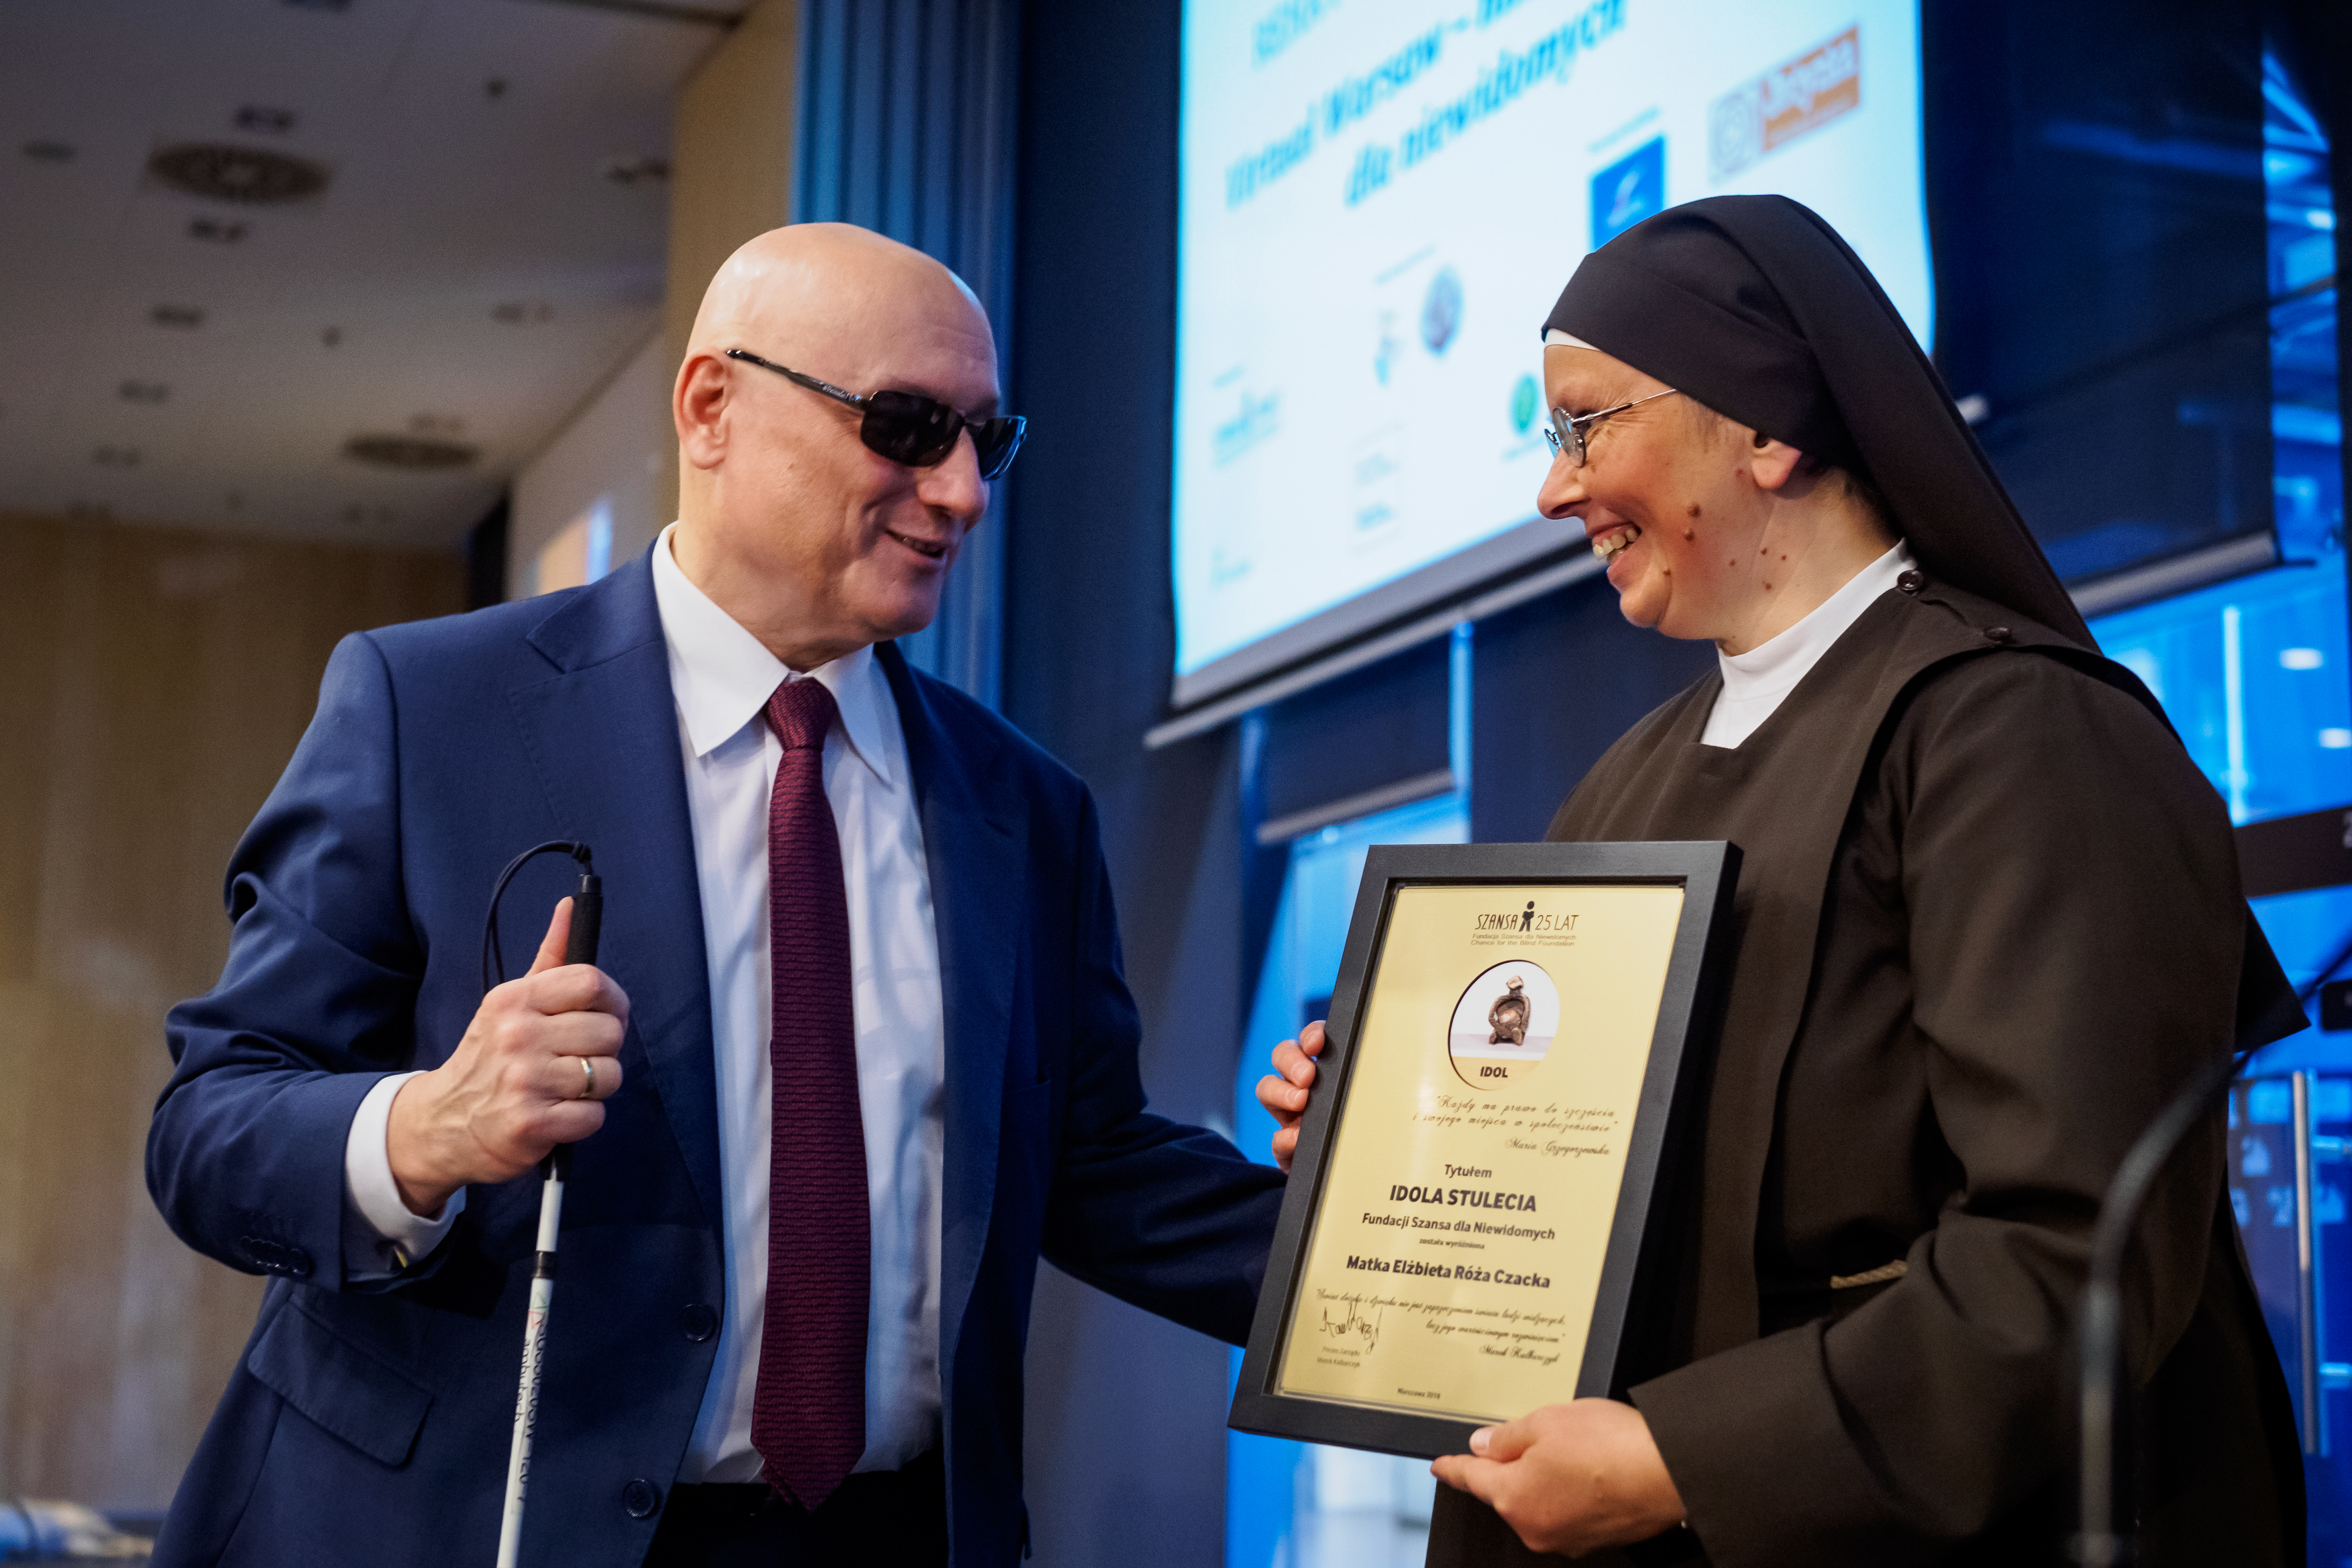 Siostra odbiera nagrodę Idola Stulecia dla Marki Elżbiety Róży Czackiej.